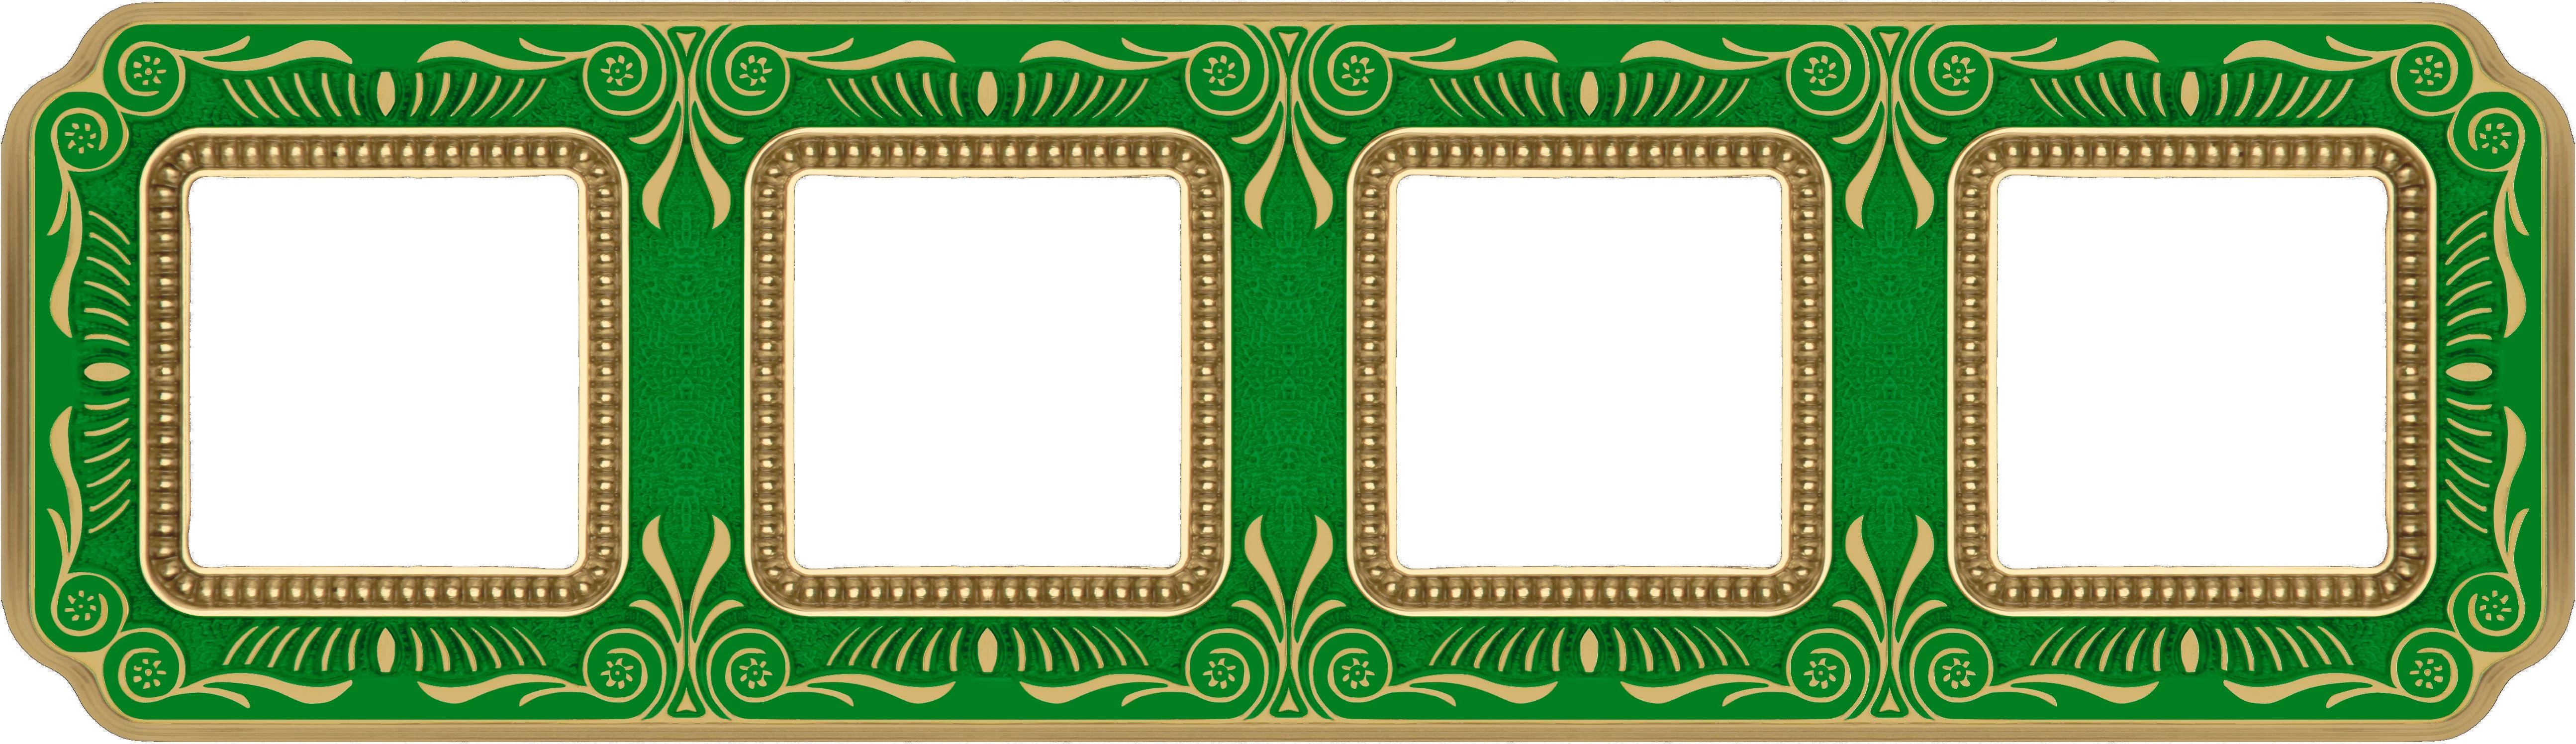 артикул FD01364VEEN название Рамка 4-ая (четверная), Fede, Серия Firenze, Изумрудно-зеленый